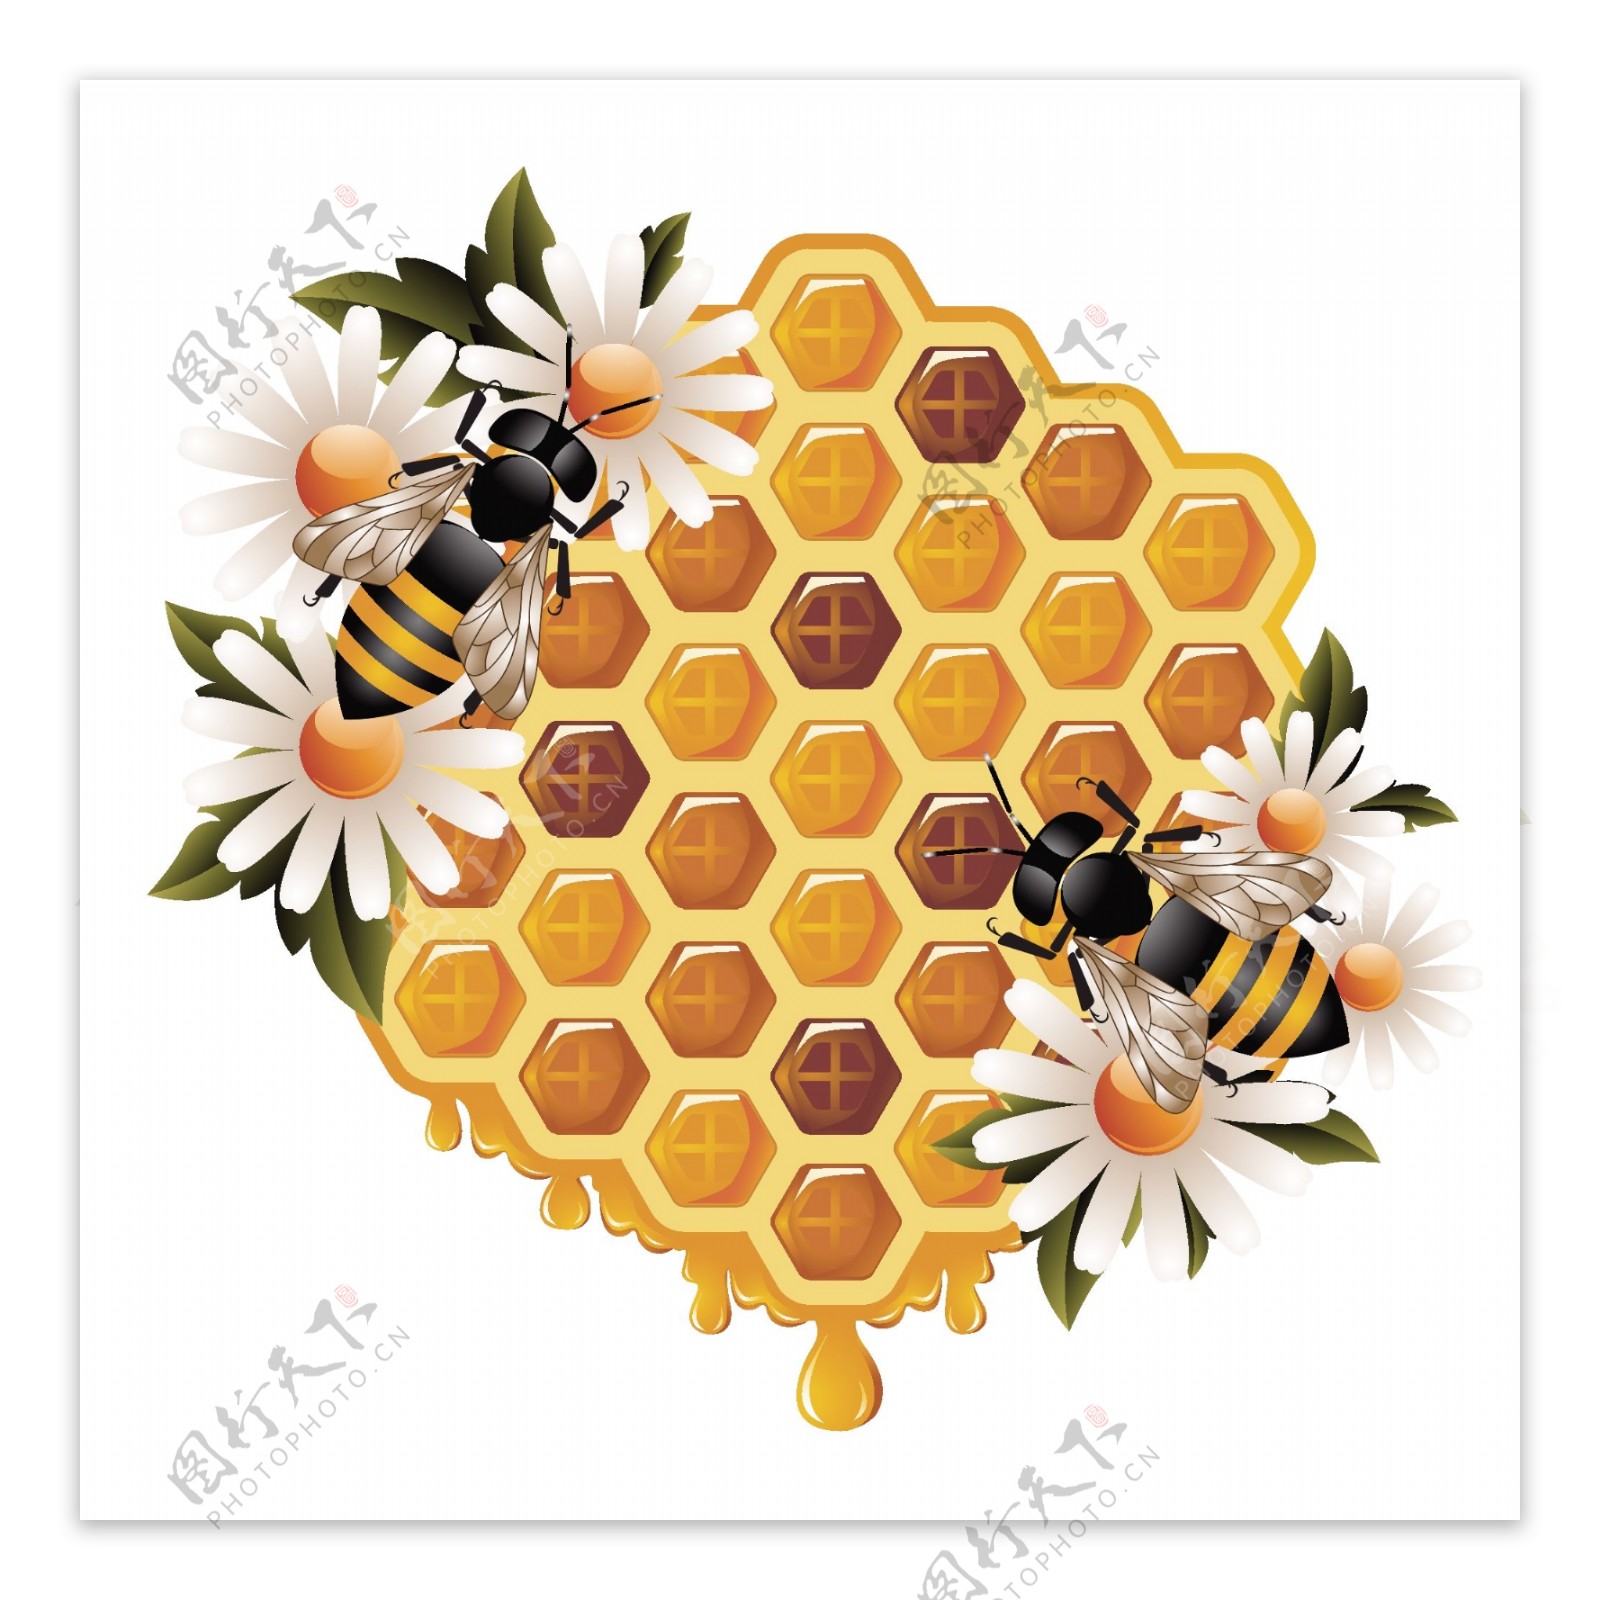 创意蜜蜂蜂巢矢量素材